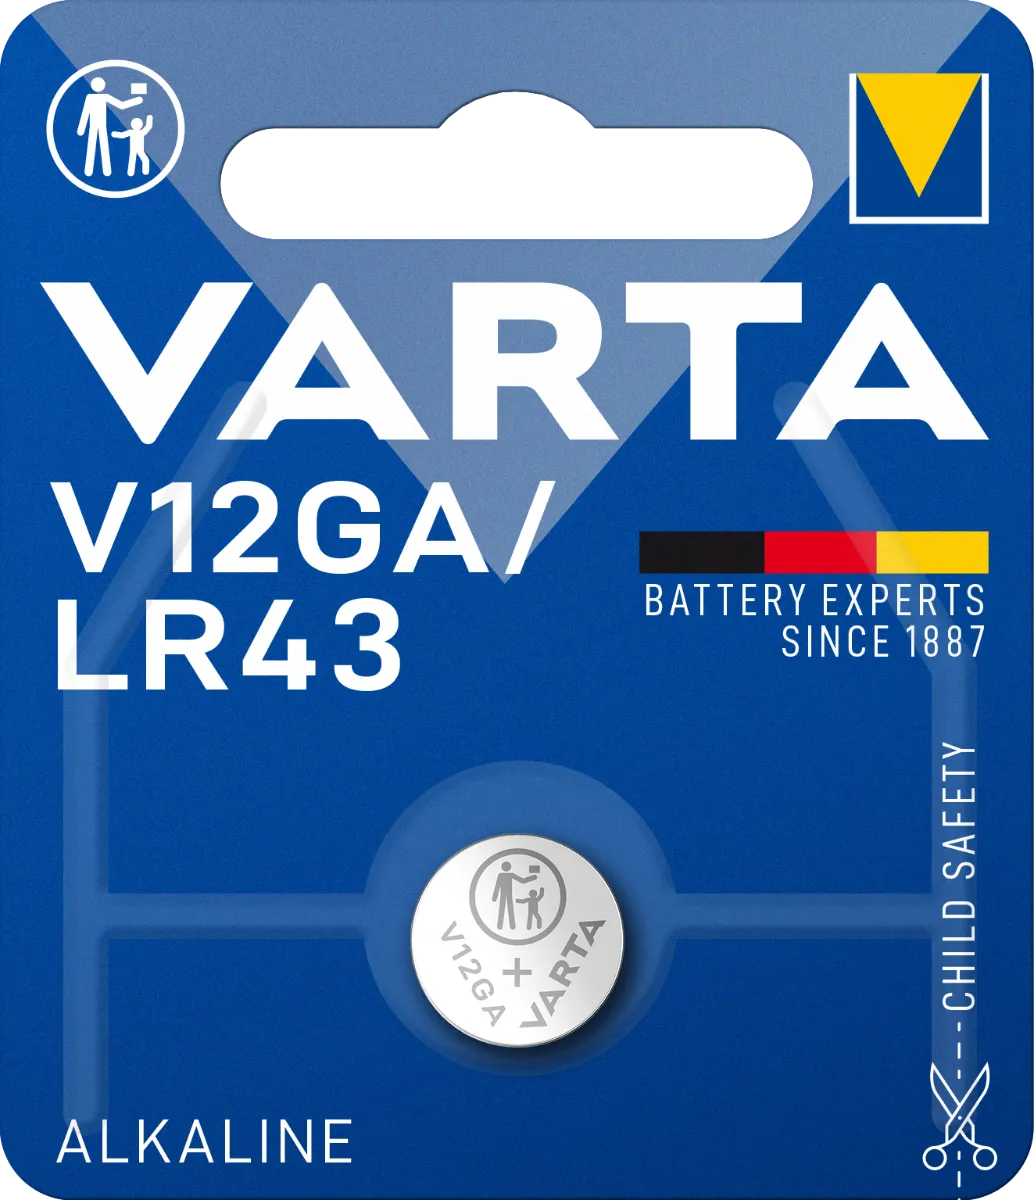 Varta V12GA/LR43 1×1 ks, lítiová baterka